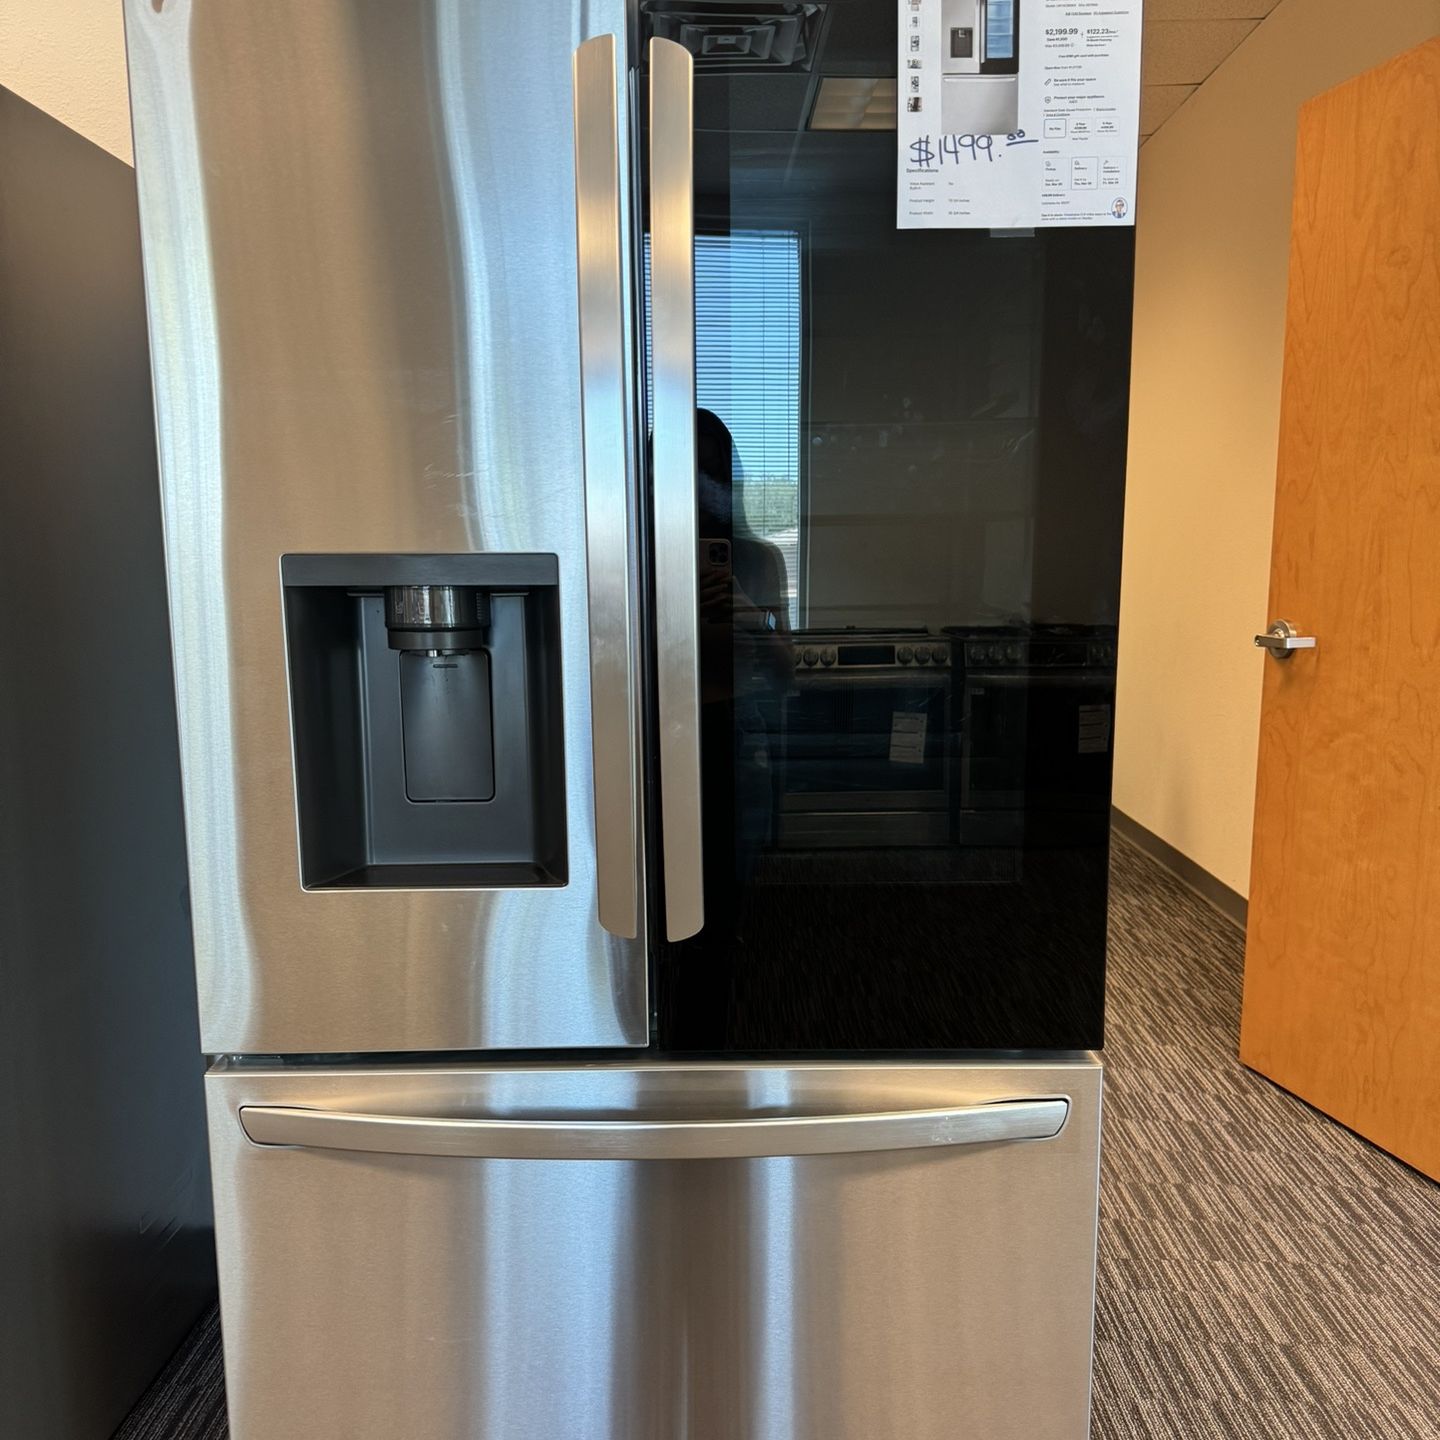 LG SmartView Counter Depth French Door Refrigerator 